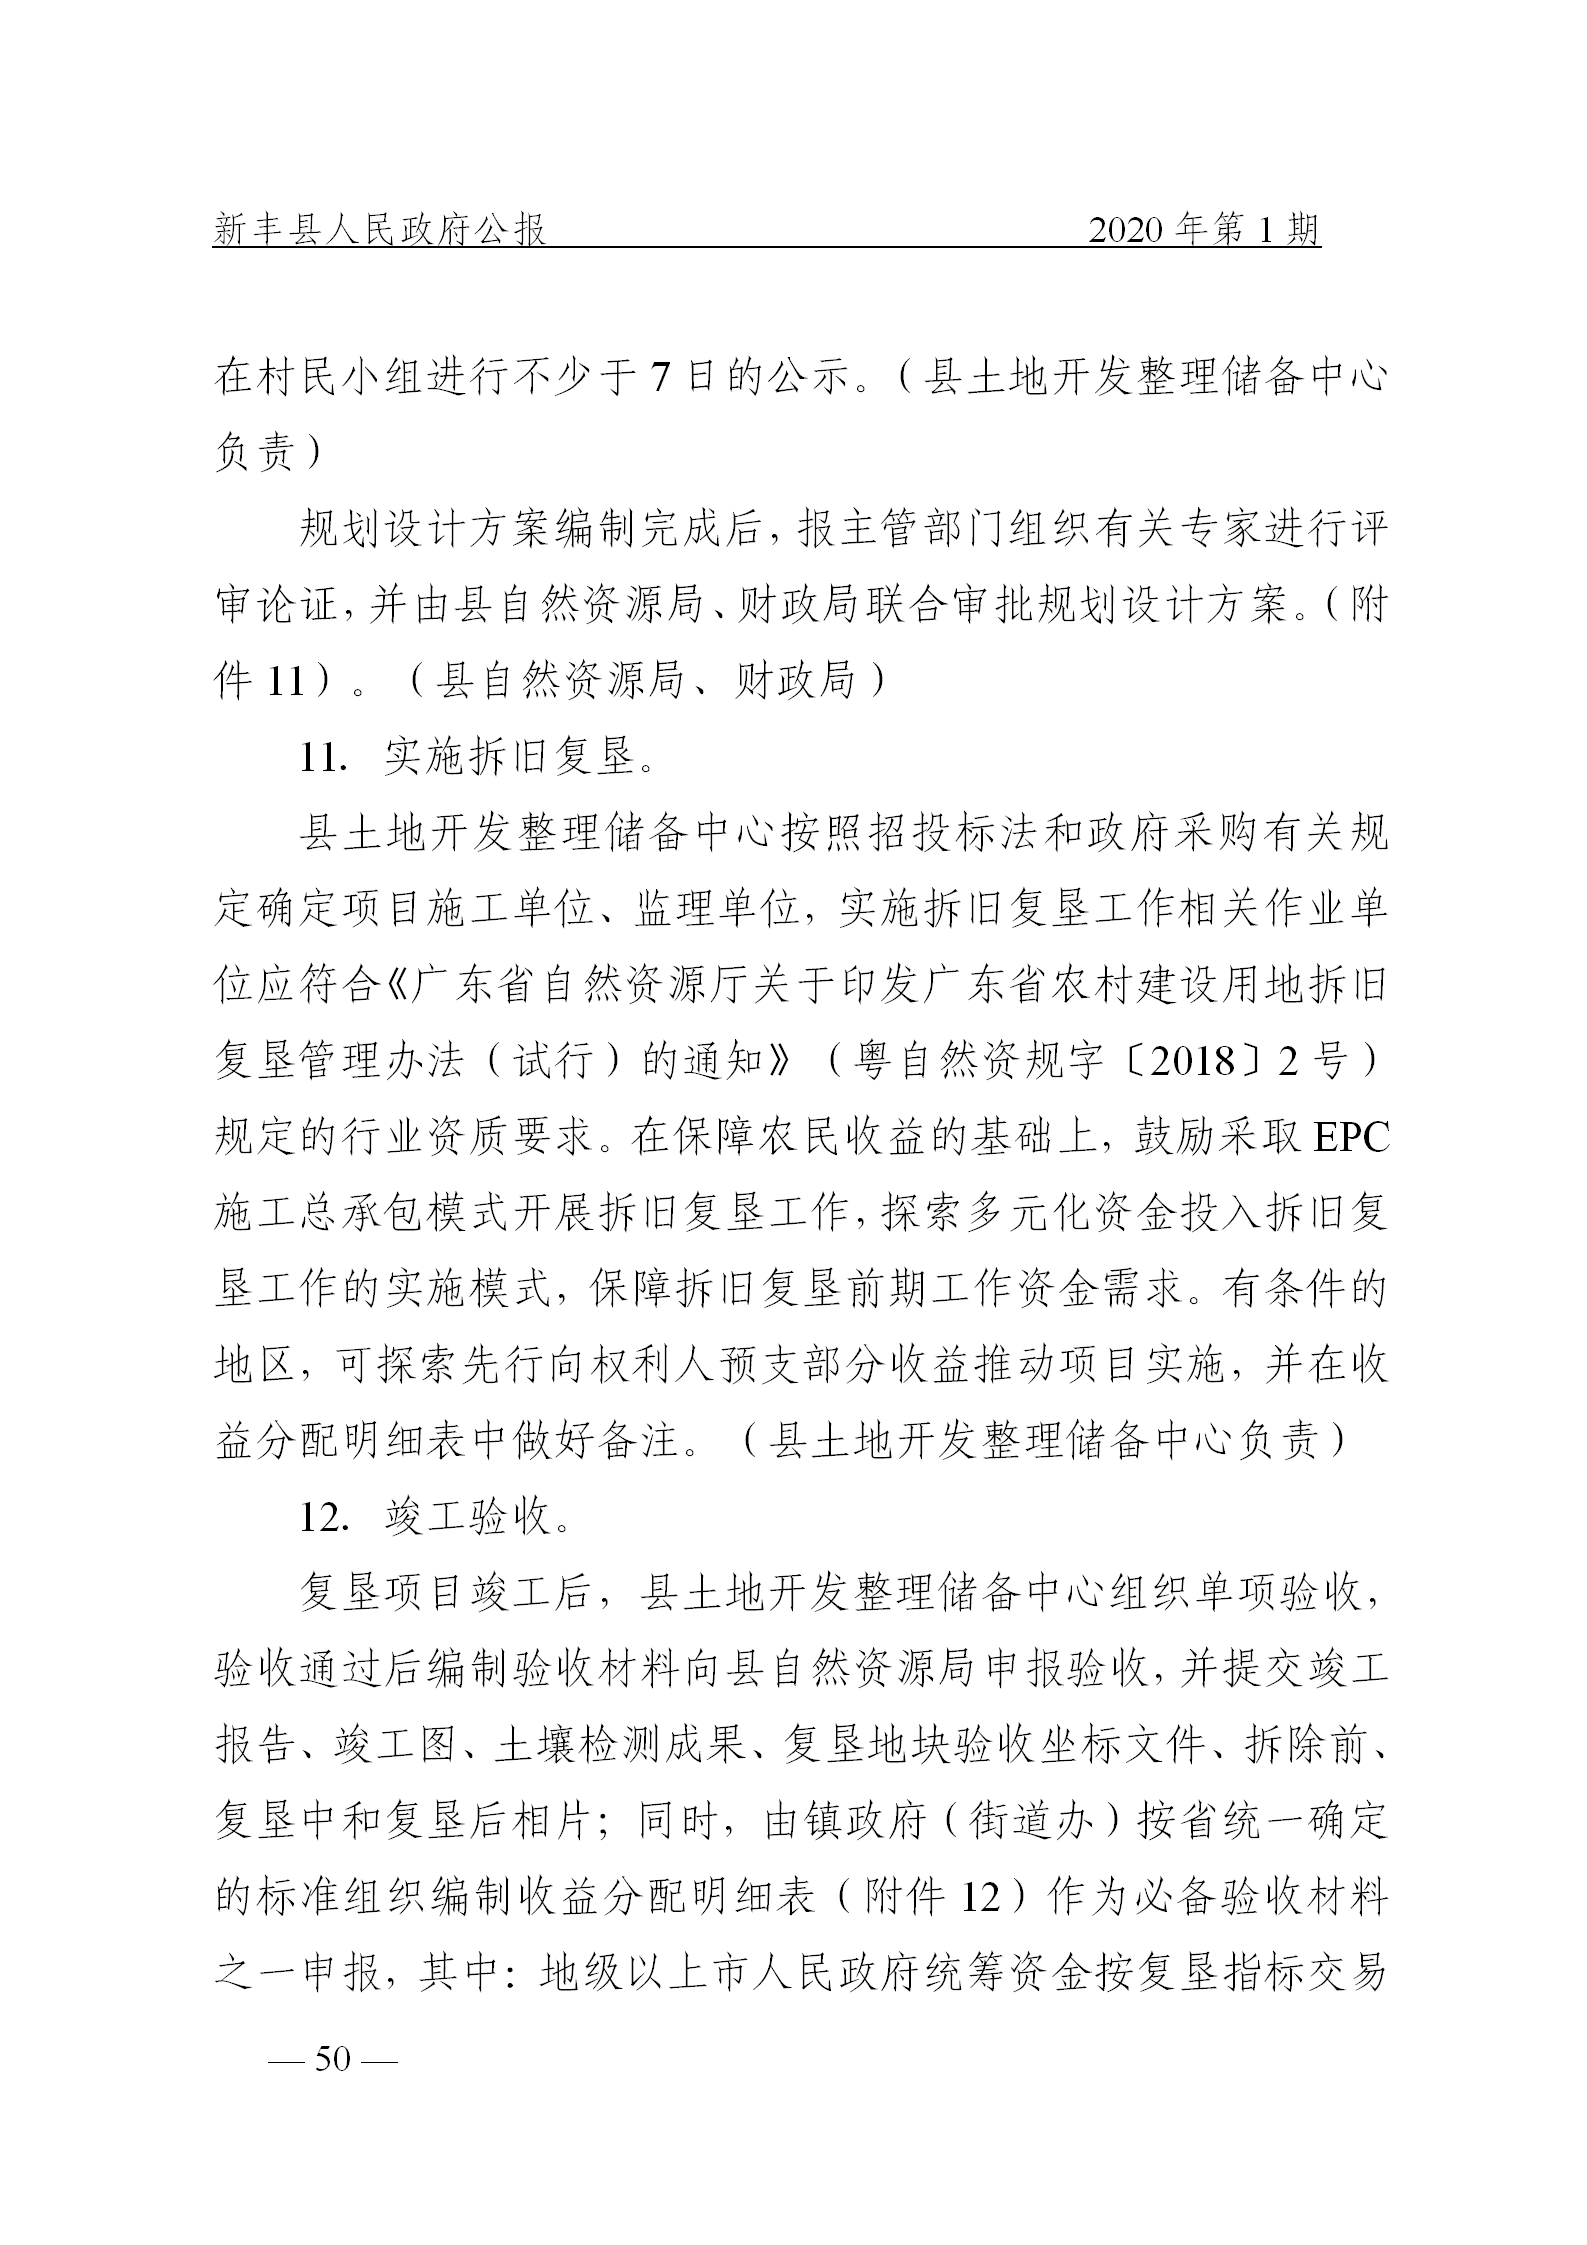 《新丰县人民政府公报》2020年第1期(1)_50.png